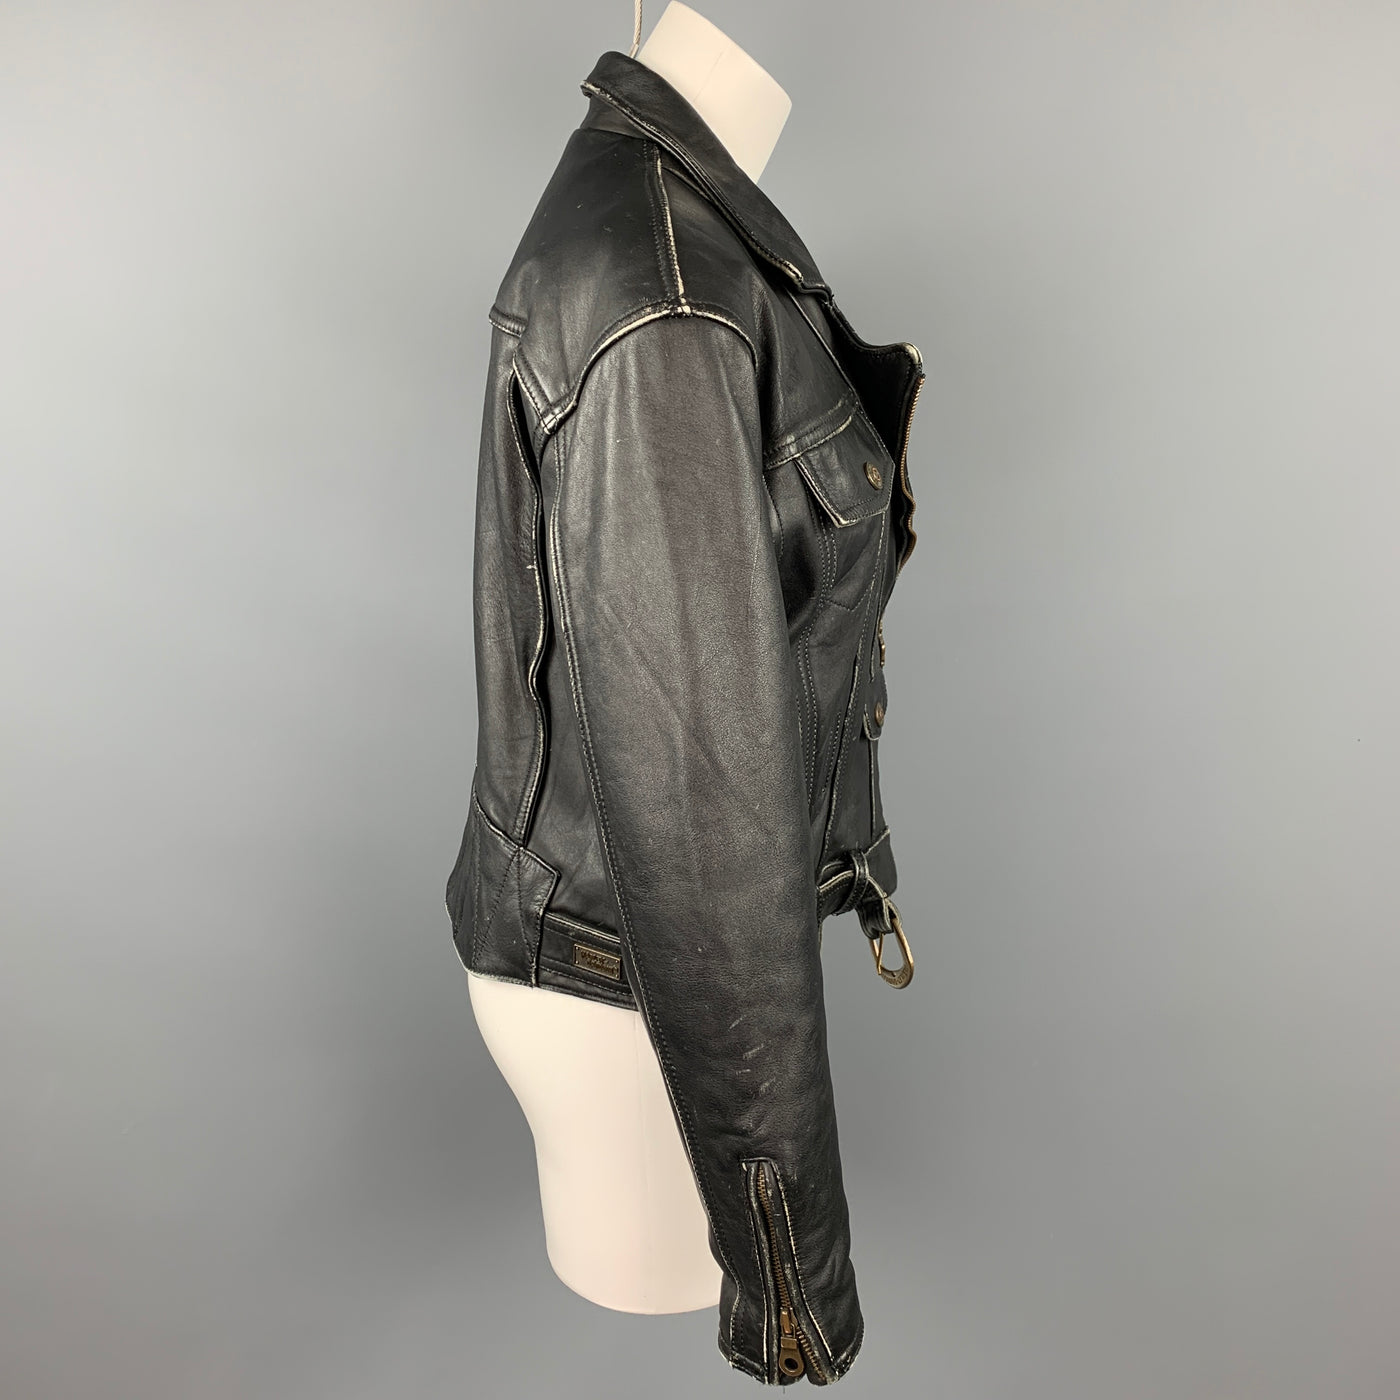 HARLEY DAVIDSON Vintage Size L Black Antique Leather Motorcycle Drifter Jacket